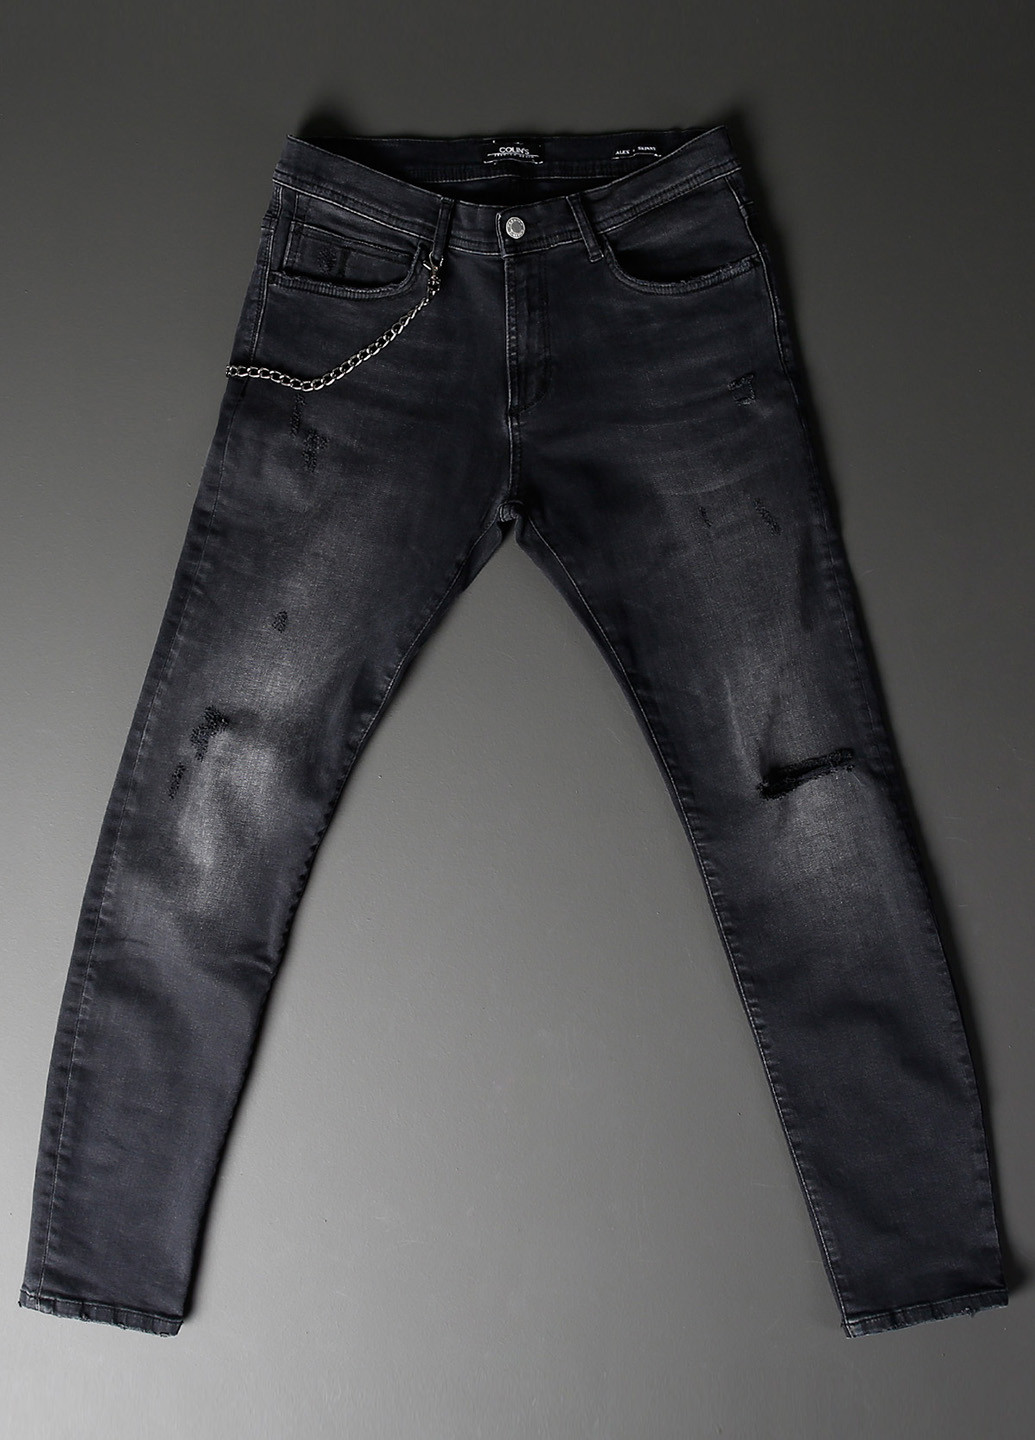 Темно-серые демисезонные прямые джинсы Colin's